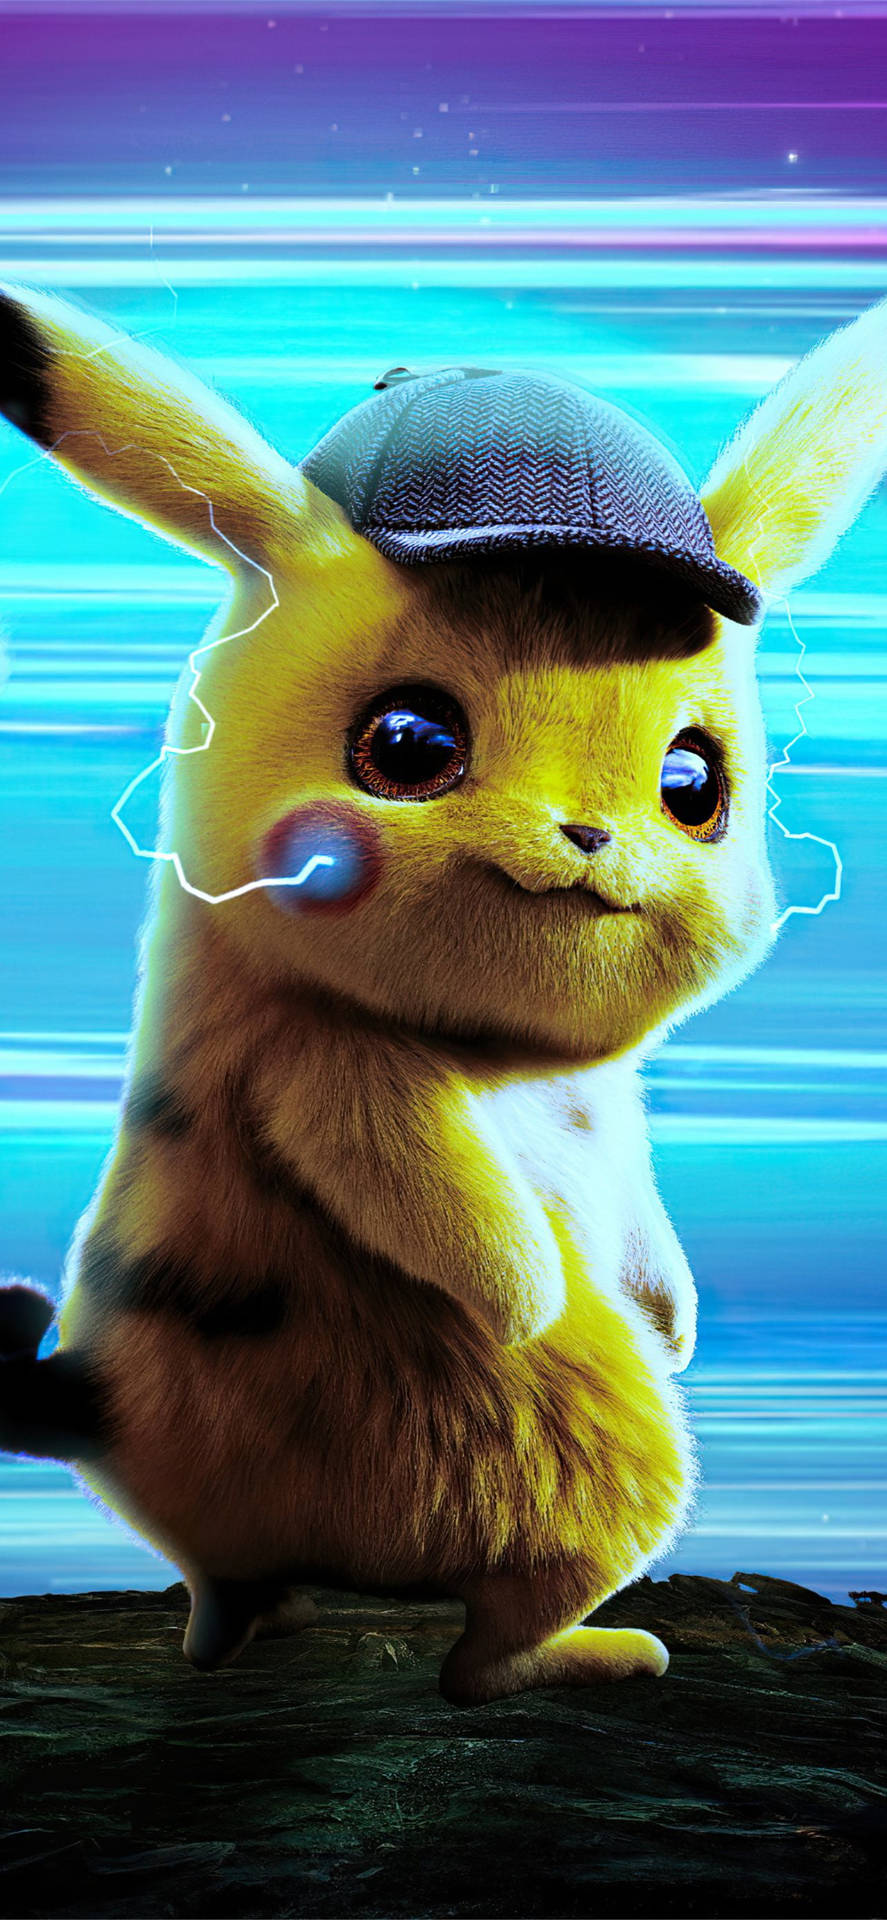 Iphone 11 Pro Max 4k Pikachu Wallpaper